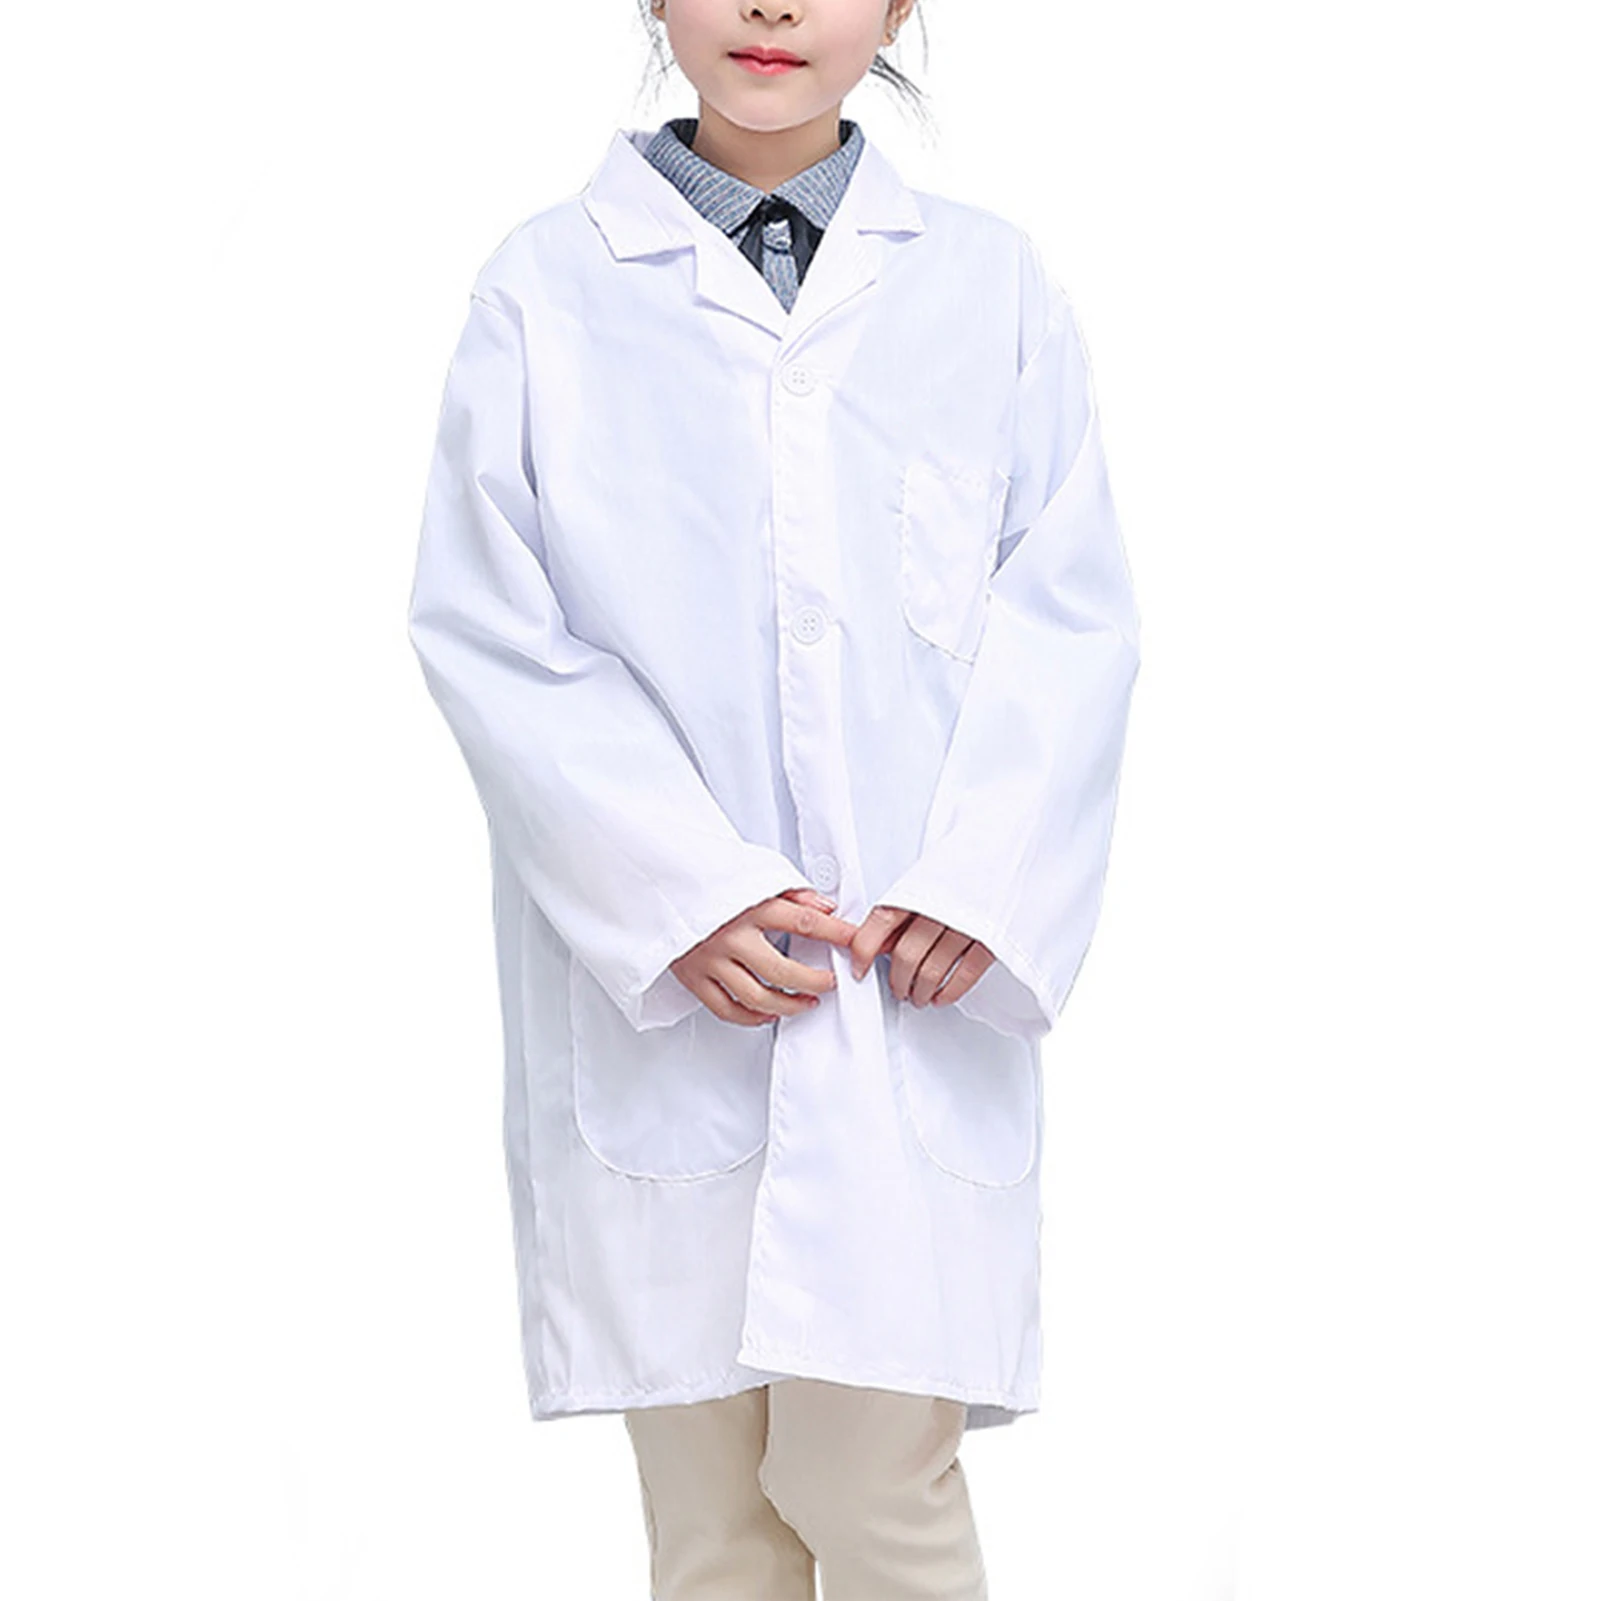 רופא ילדים Cosplay מעיל מעבדה לעזור לילדים ללמוד את הרופא Cosplay המעיל על הבמה ביצועים קוספליי התמונה 3